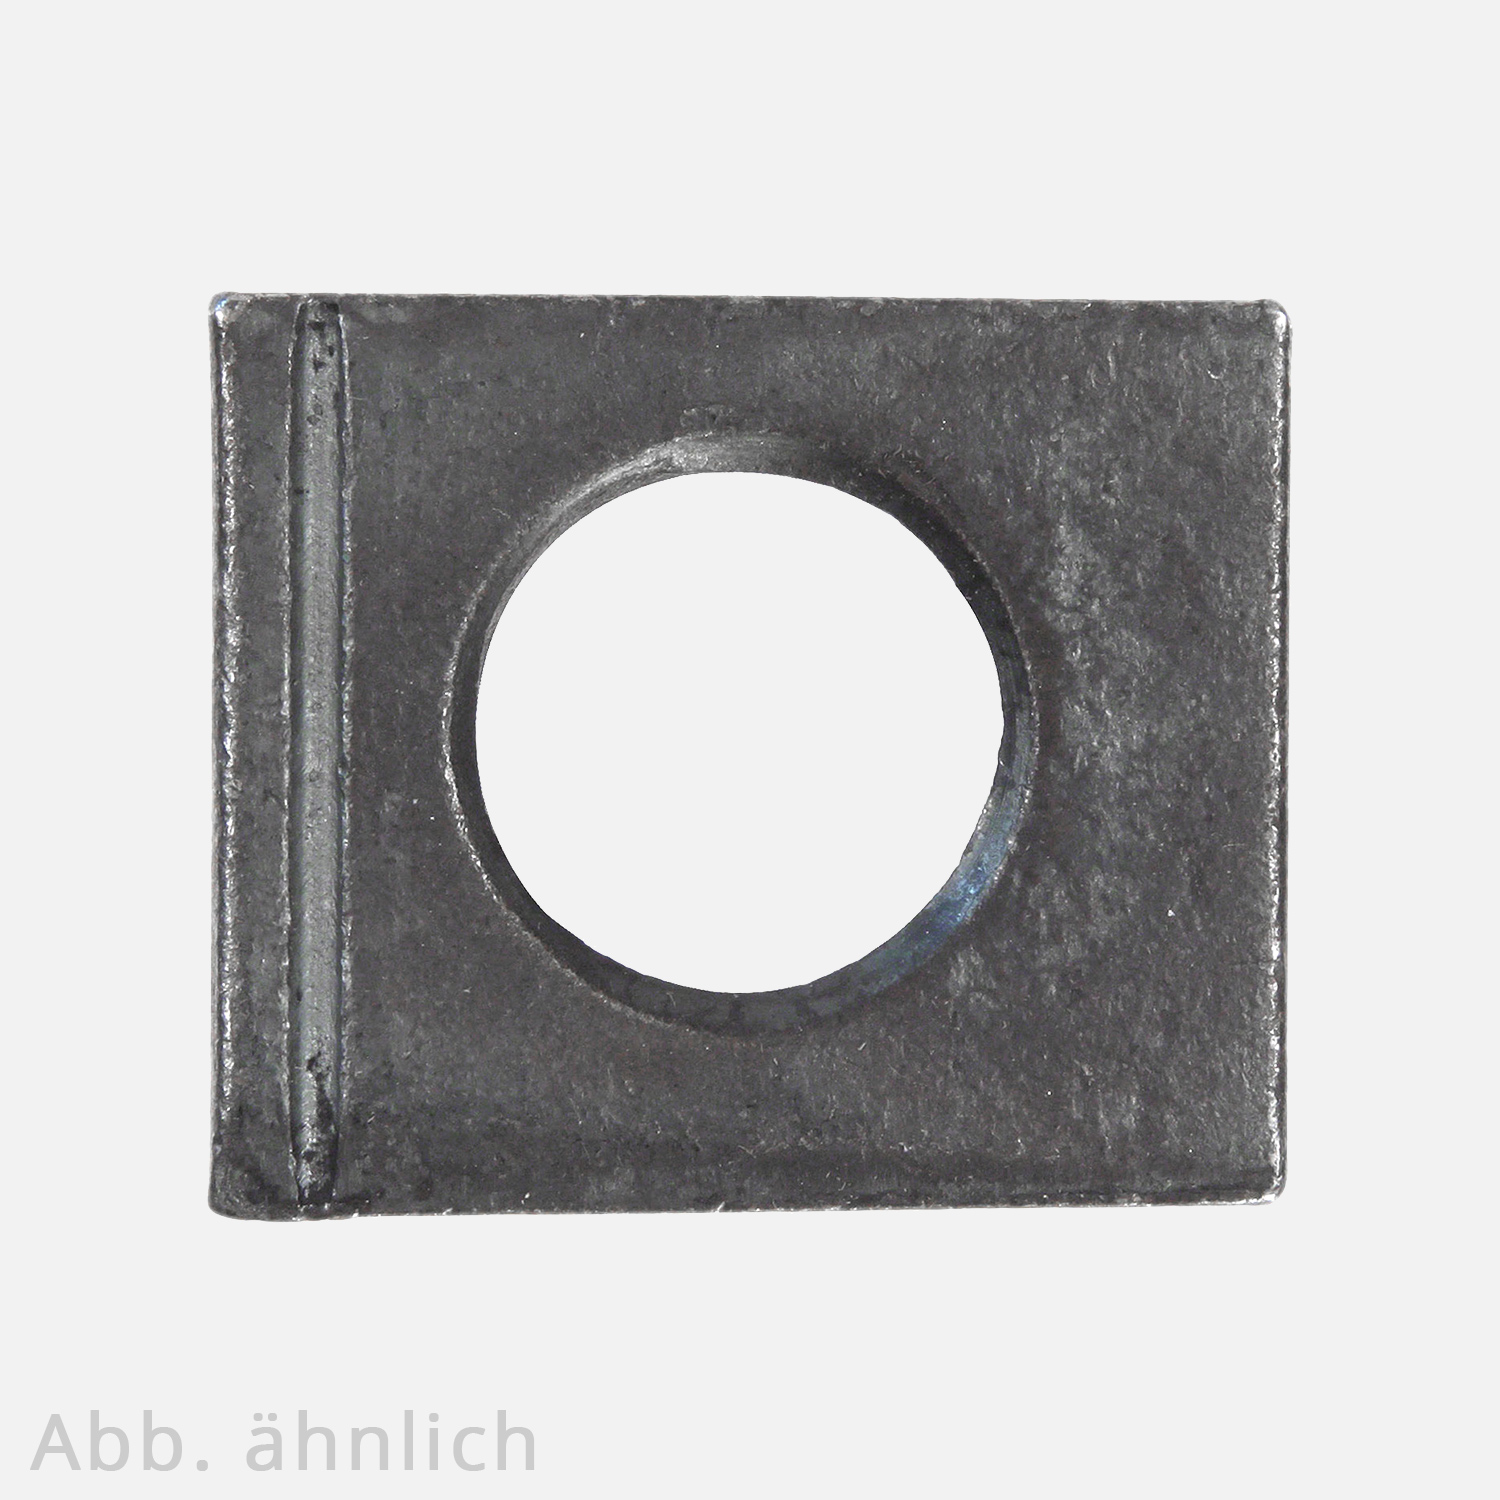 1 Vierkantscheibe - keilförmig 14% - 17 mm - DIN 6917 - Stahl vergütet